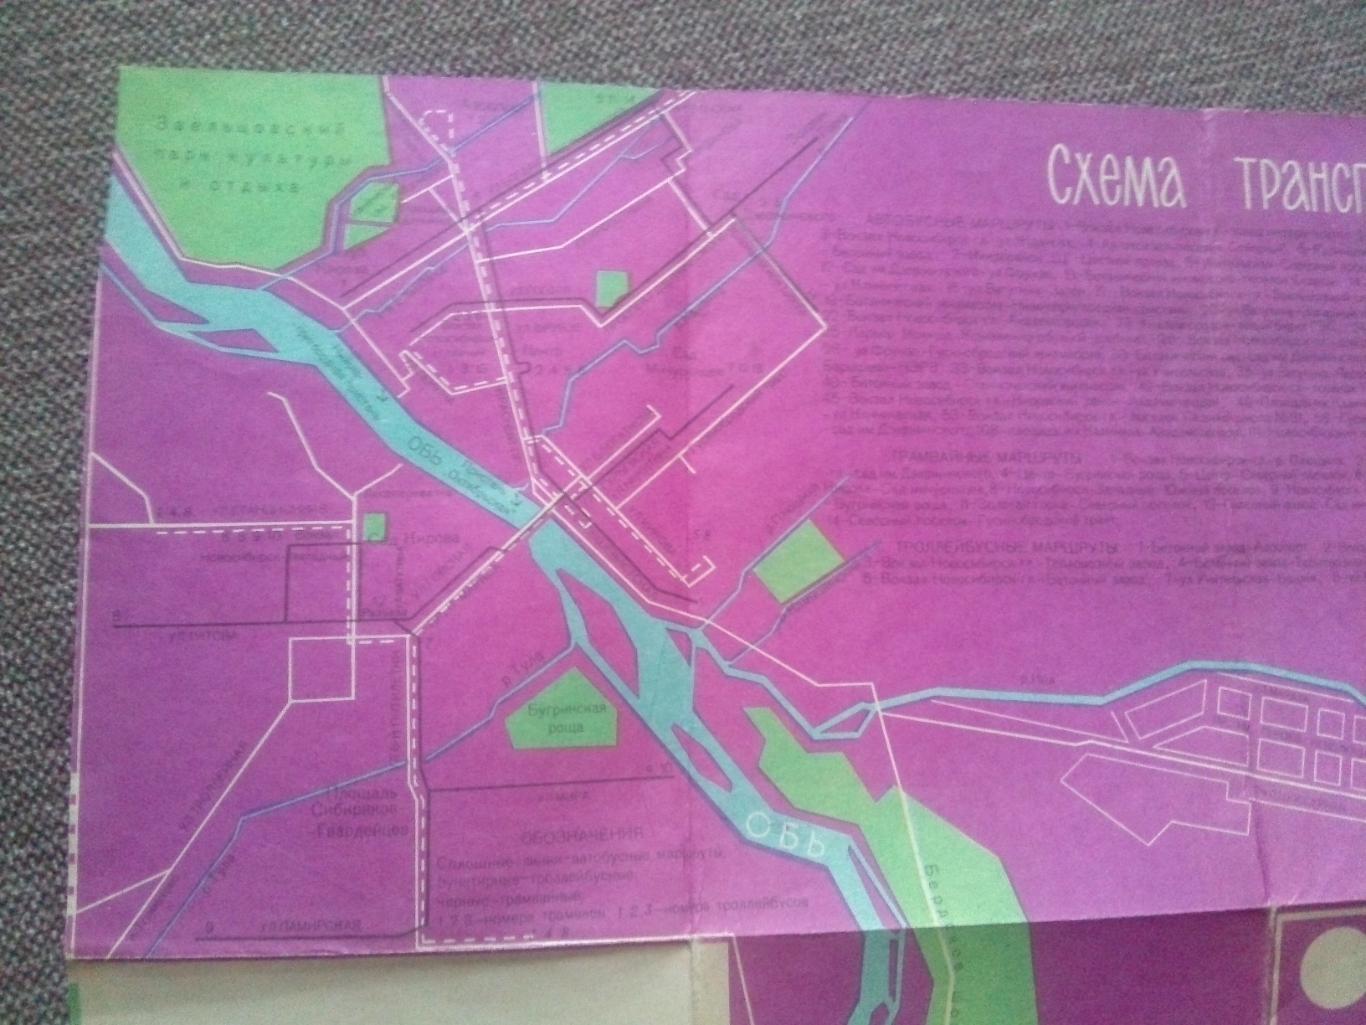 Схематический план - карта : Новосибирск 1967 г.( Туризм СССР ) 3